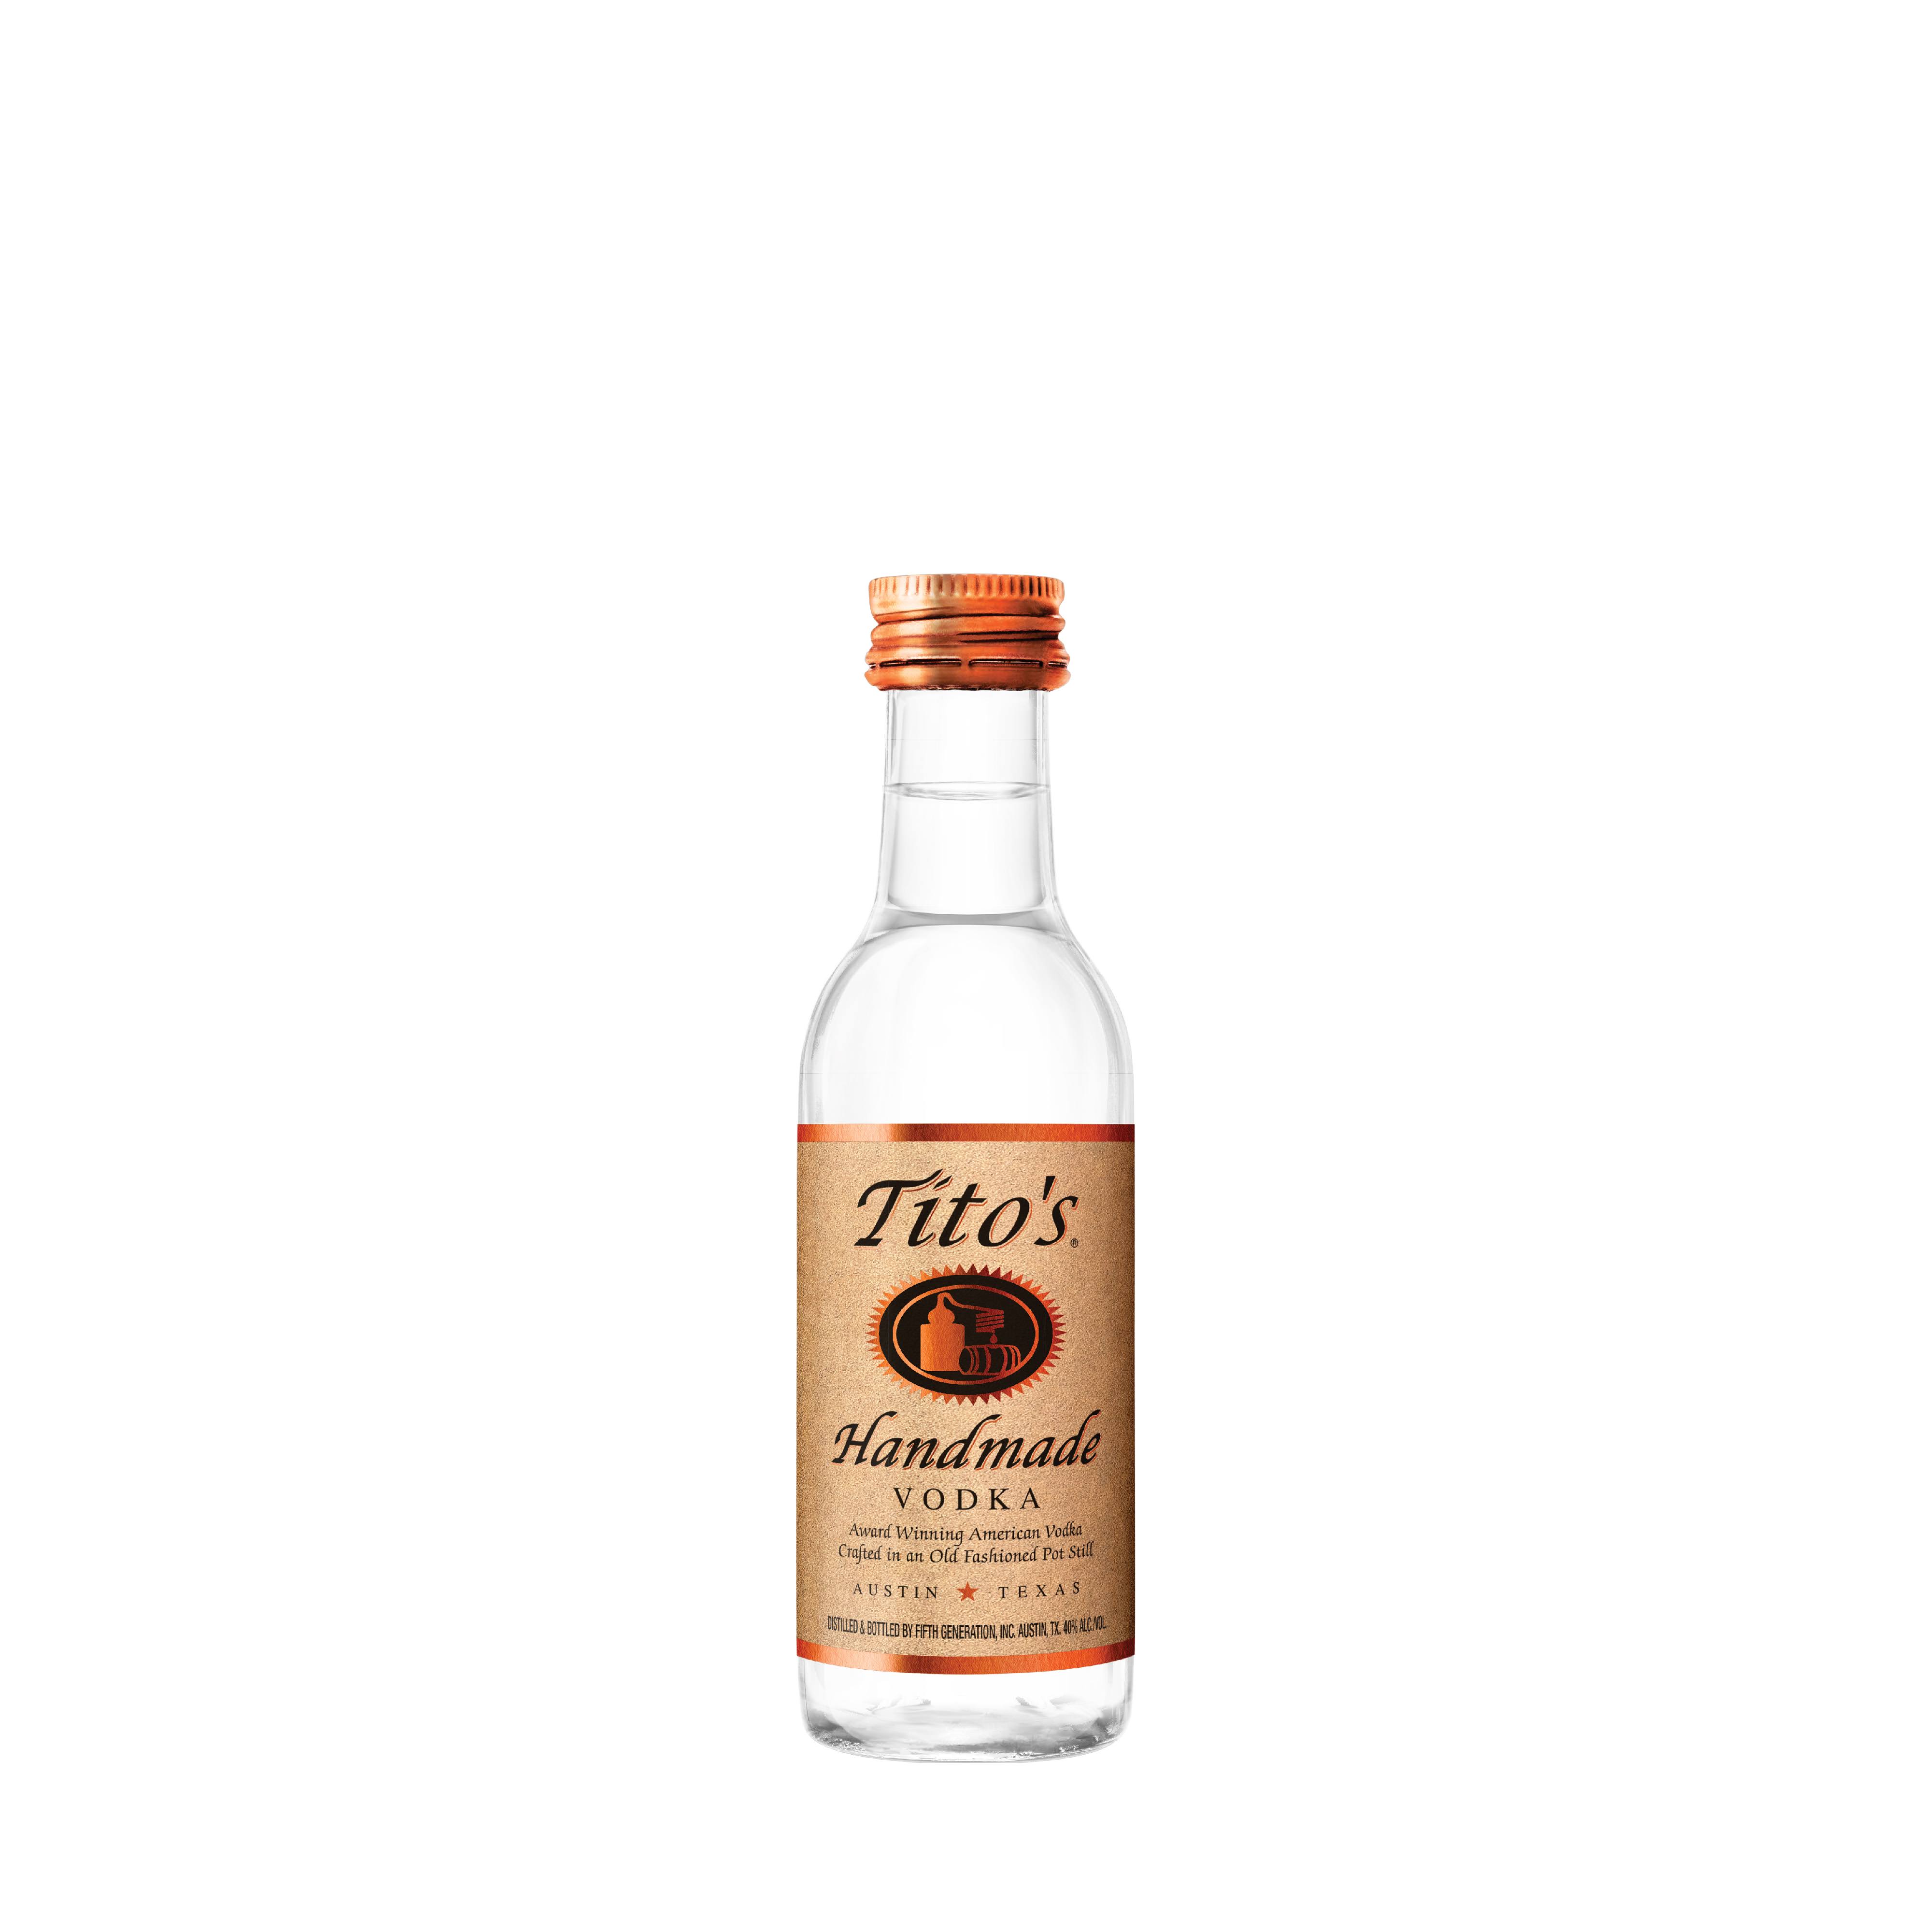 Tito's Handmade Vodka - 50 ml bottle